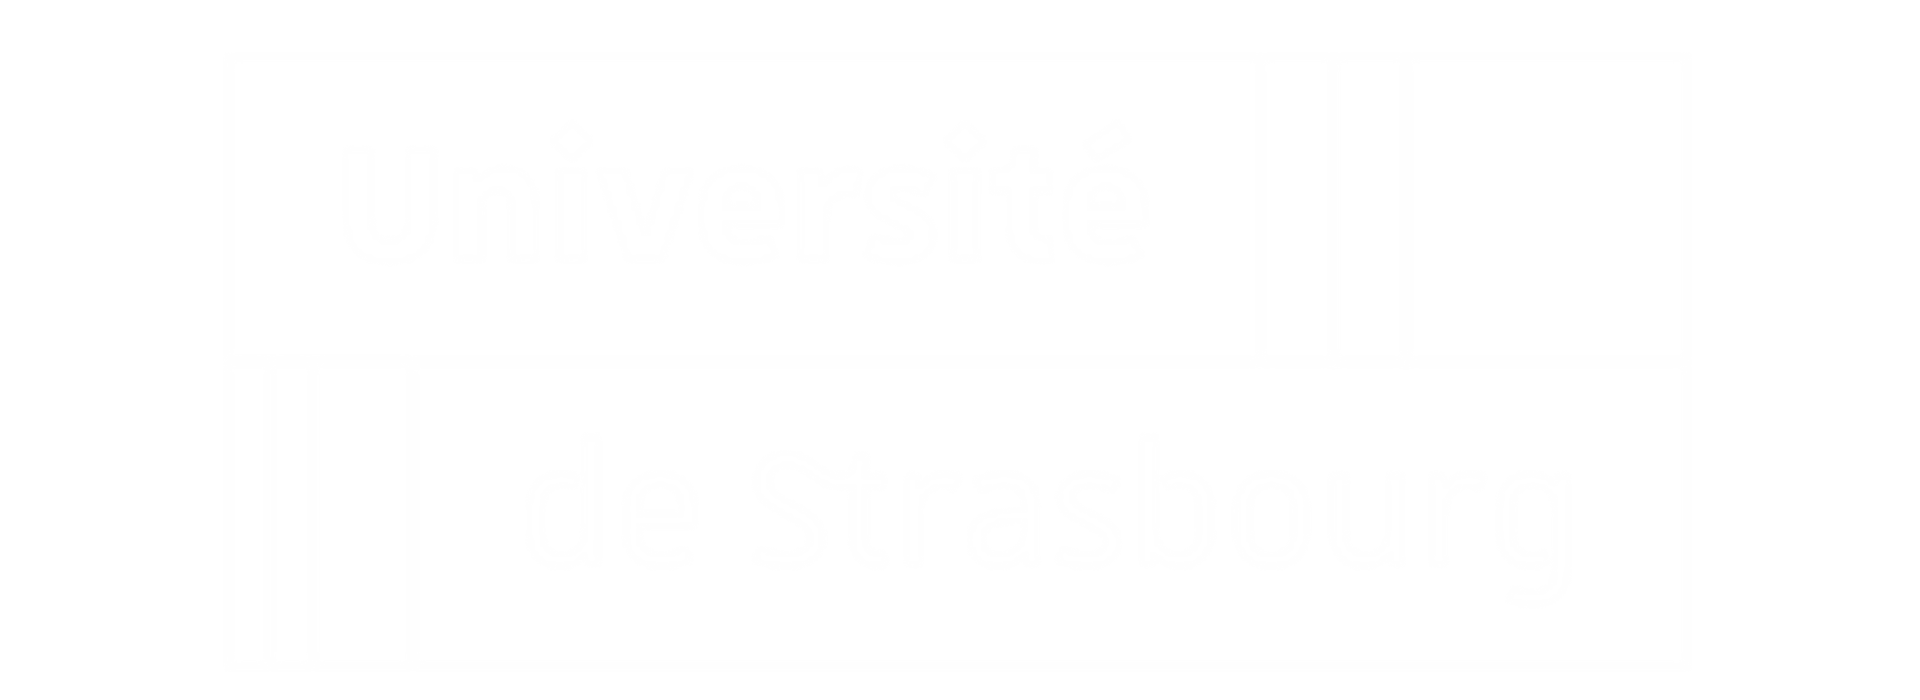 The University of Strasbourg logo